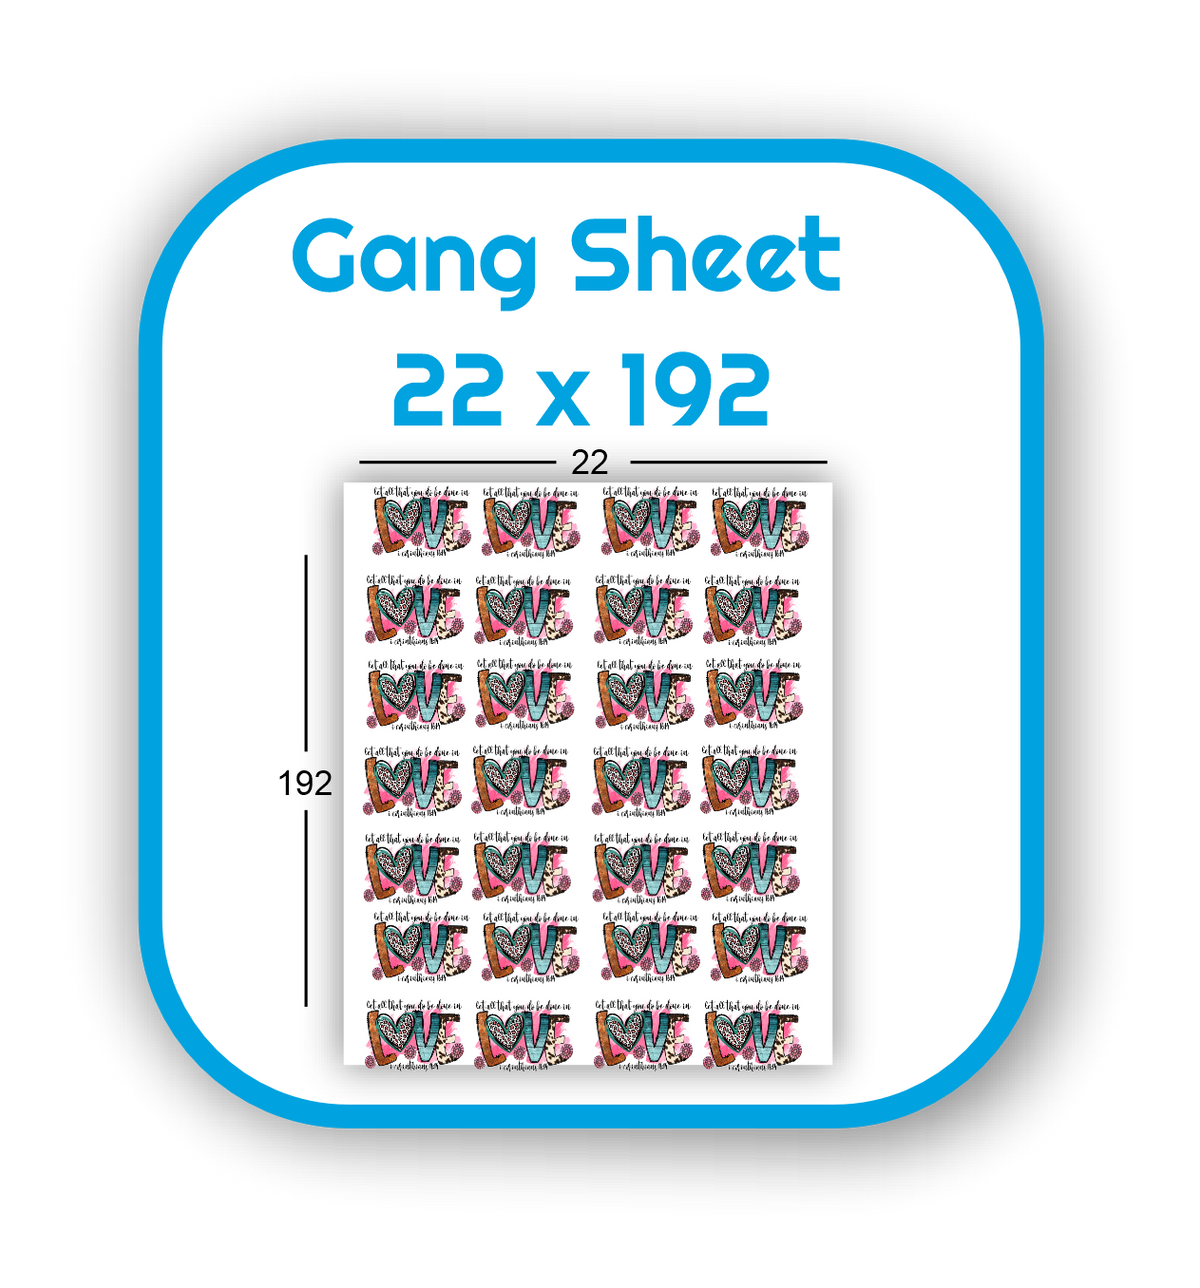 Gang Sheet 22x192